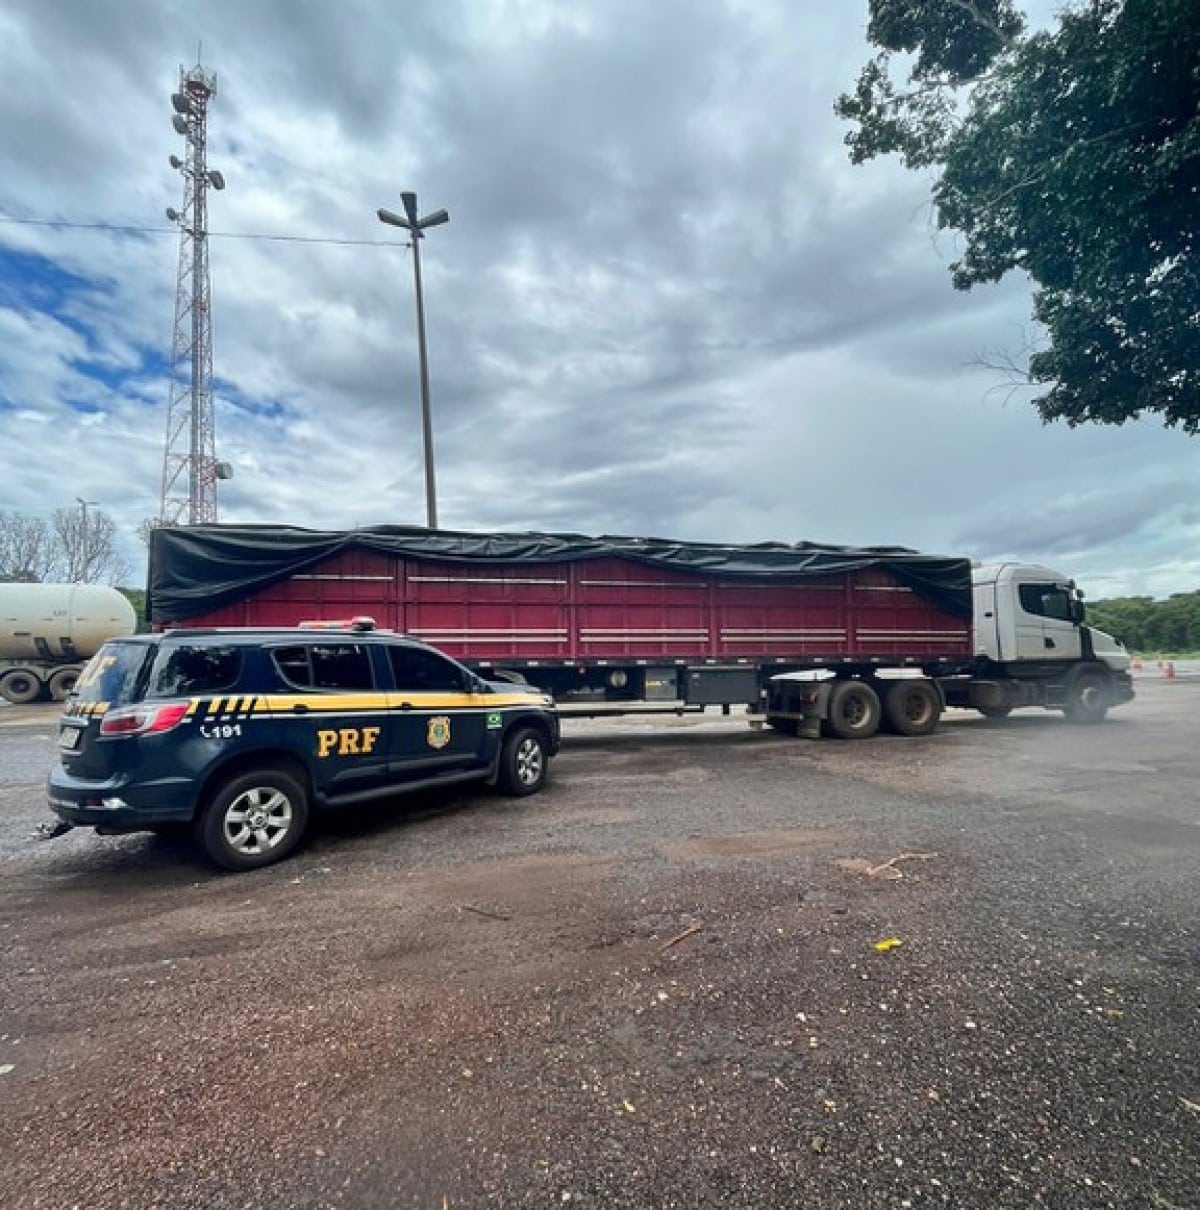 Em Santo Antônio do Leverger/MT, PRF apreende caminhão com carga roubada avaliada em mais de R$2 milhões de reais